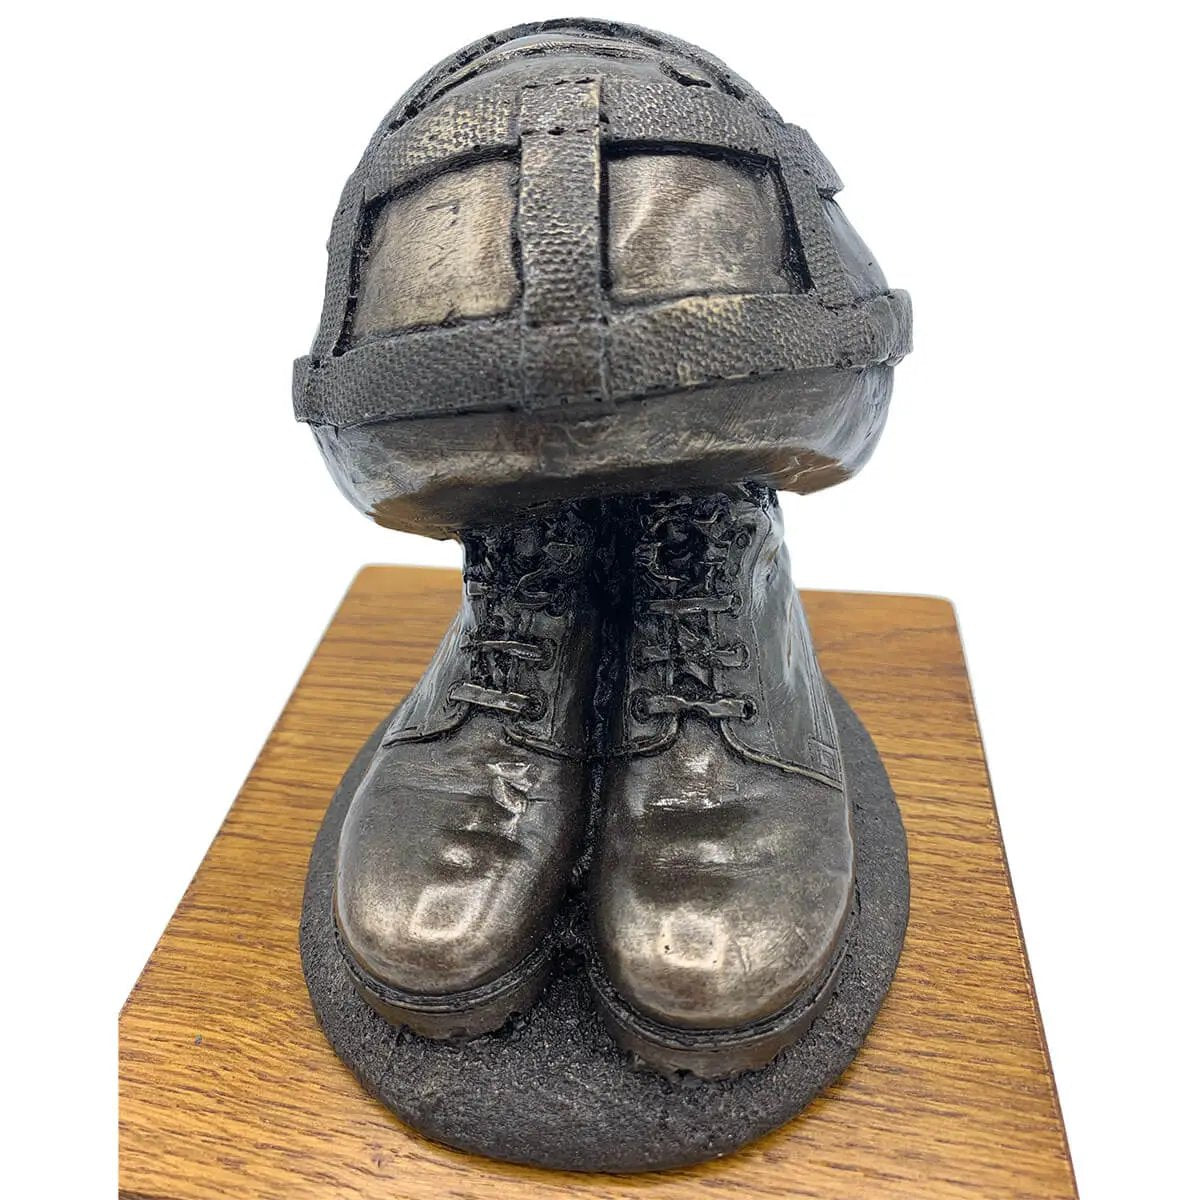 Helmet & Boots Bronze Resin Statue - John Bull Clothing